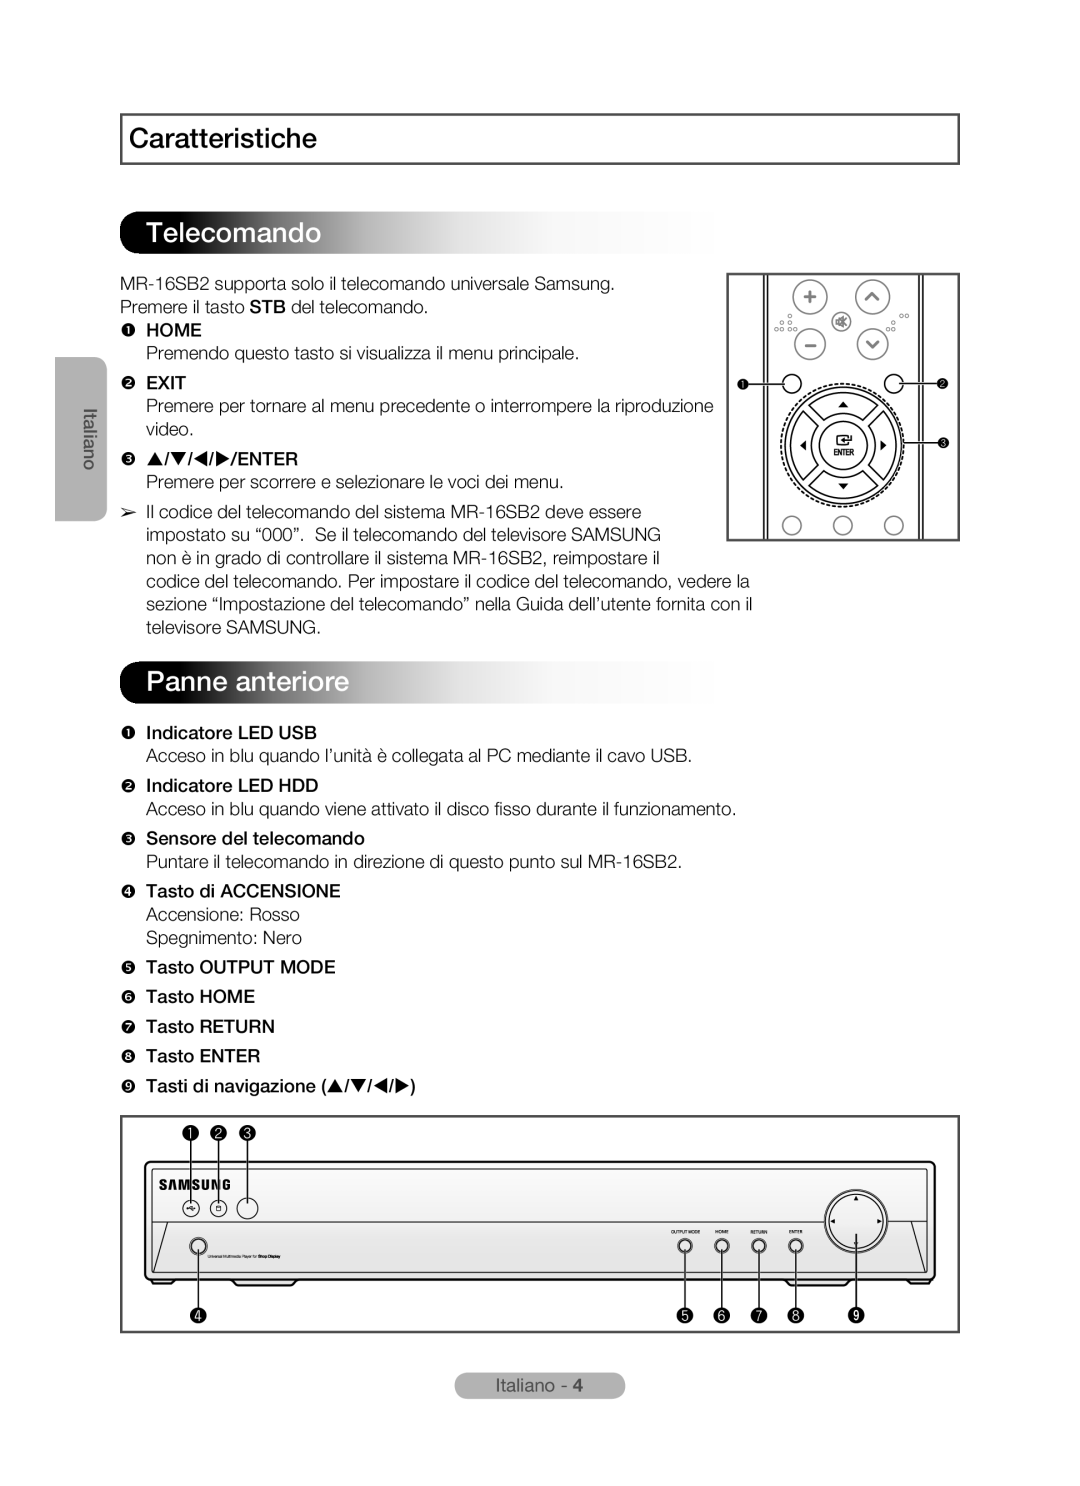 Samsung MR-16SB2 manual Telecomando, Panne anteriore, Caratteristiche, Italiano 